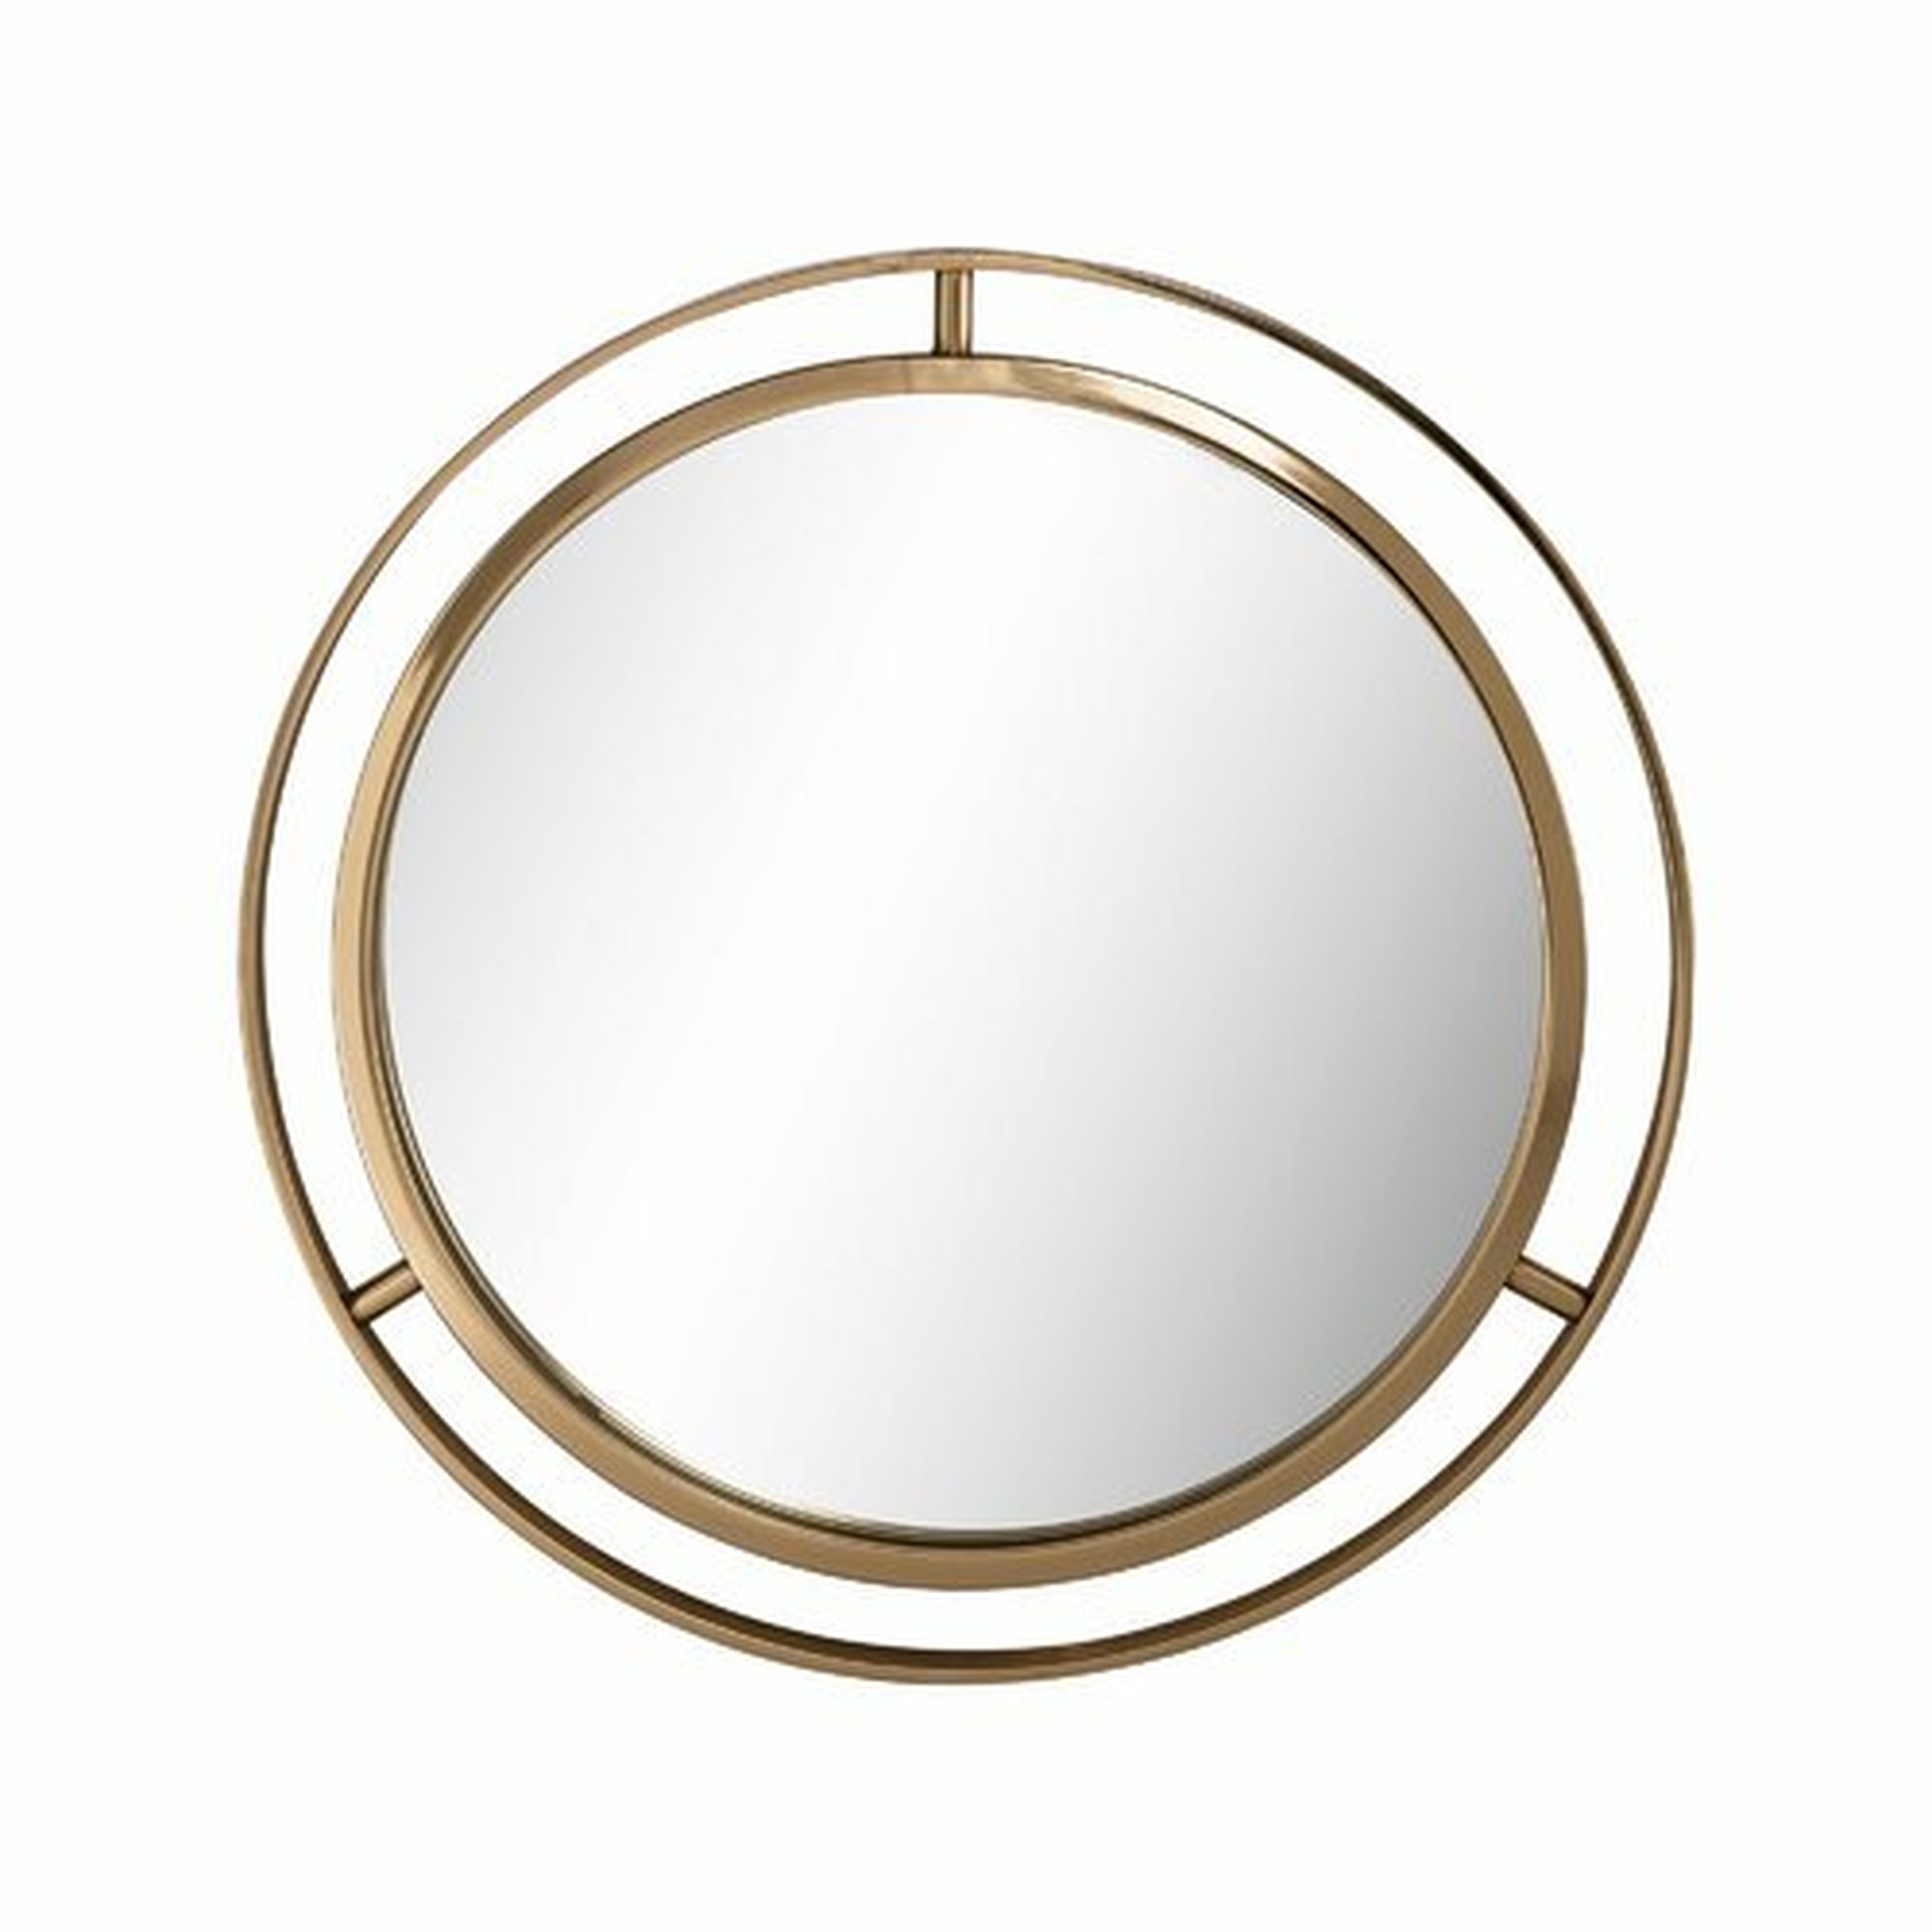 Terwilliger Round Wall Mirror - Wayfair